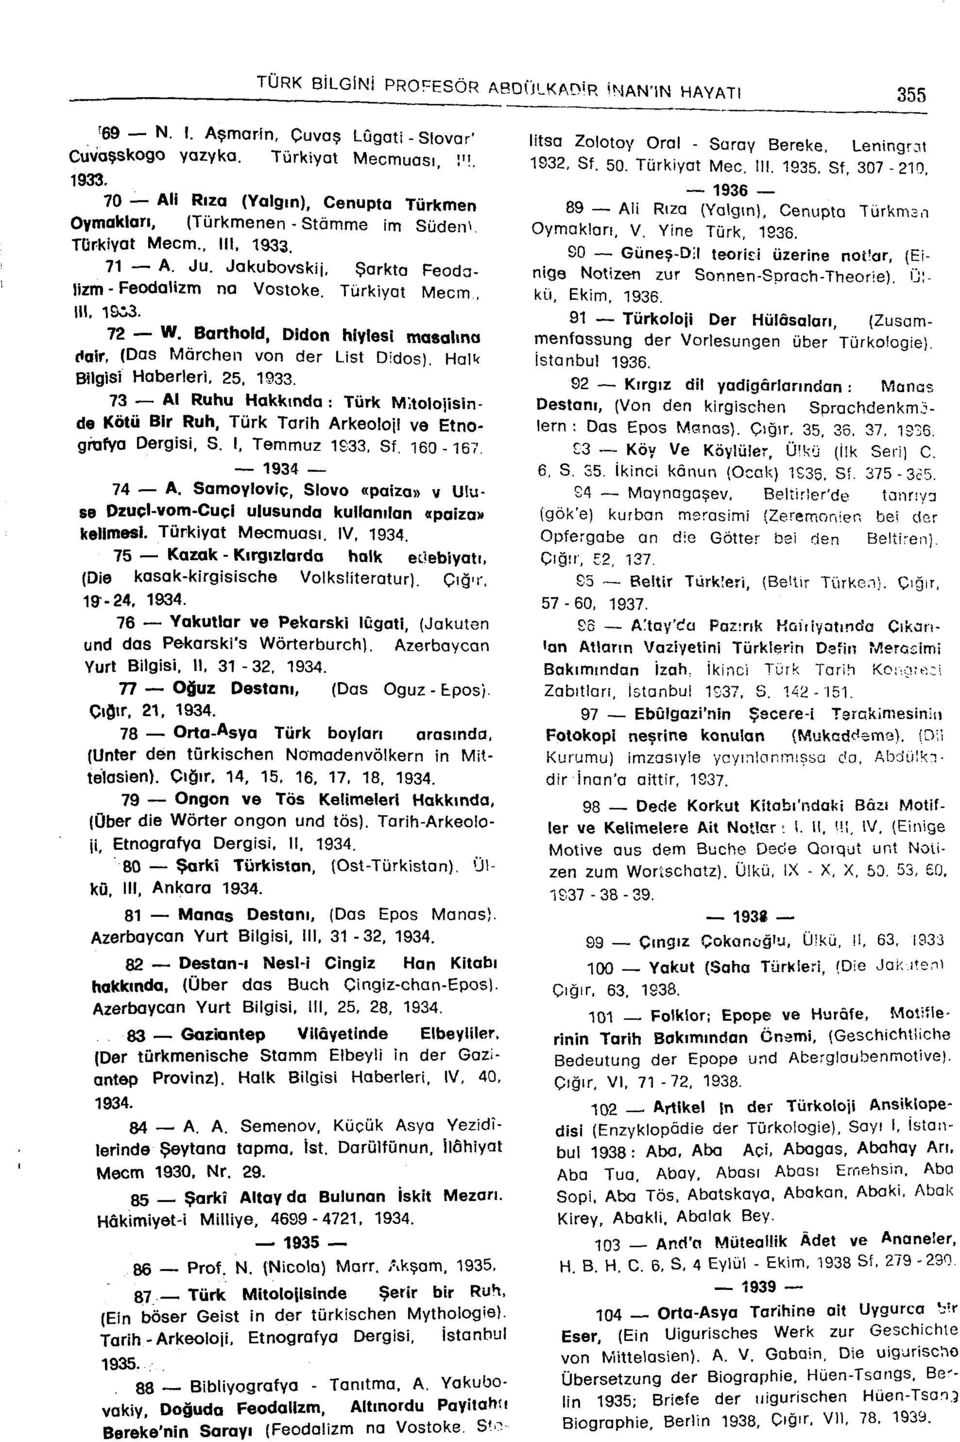 72 W. Barthold, Didon hiylesi masalına dair, (Das Mârchen von der List Didos), Halk Bilgisi Haberleri, 25, 1933.